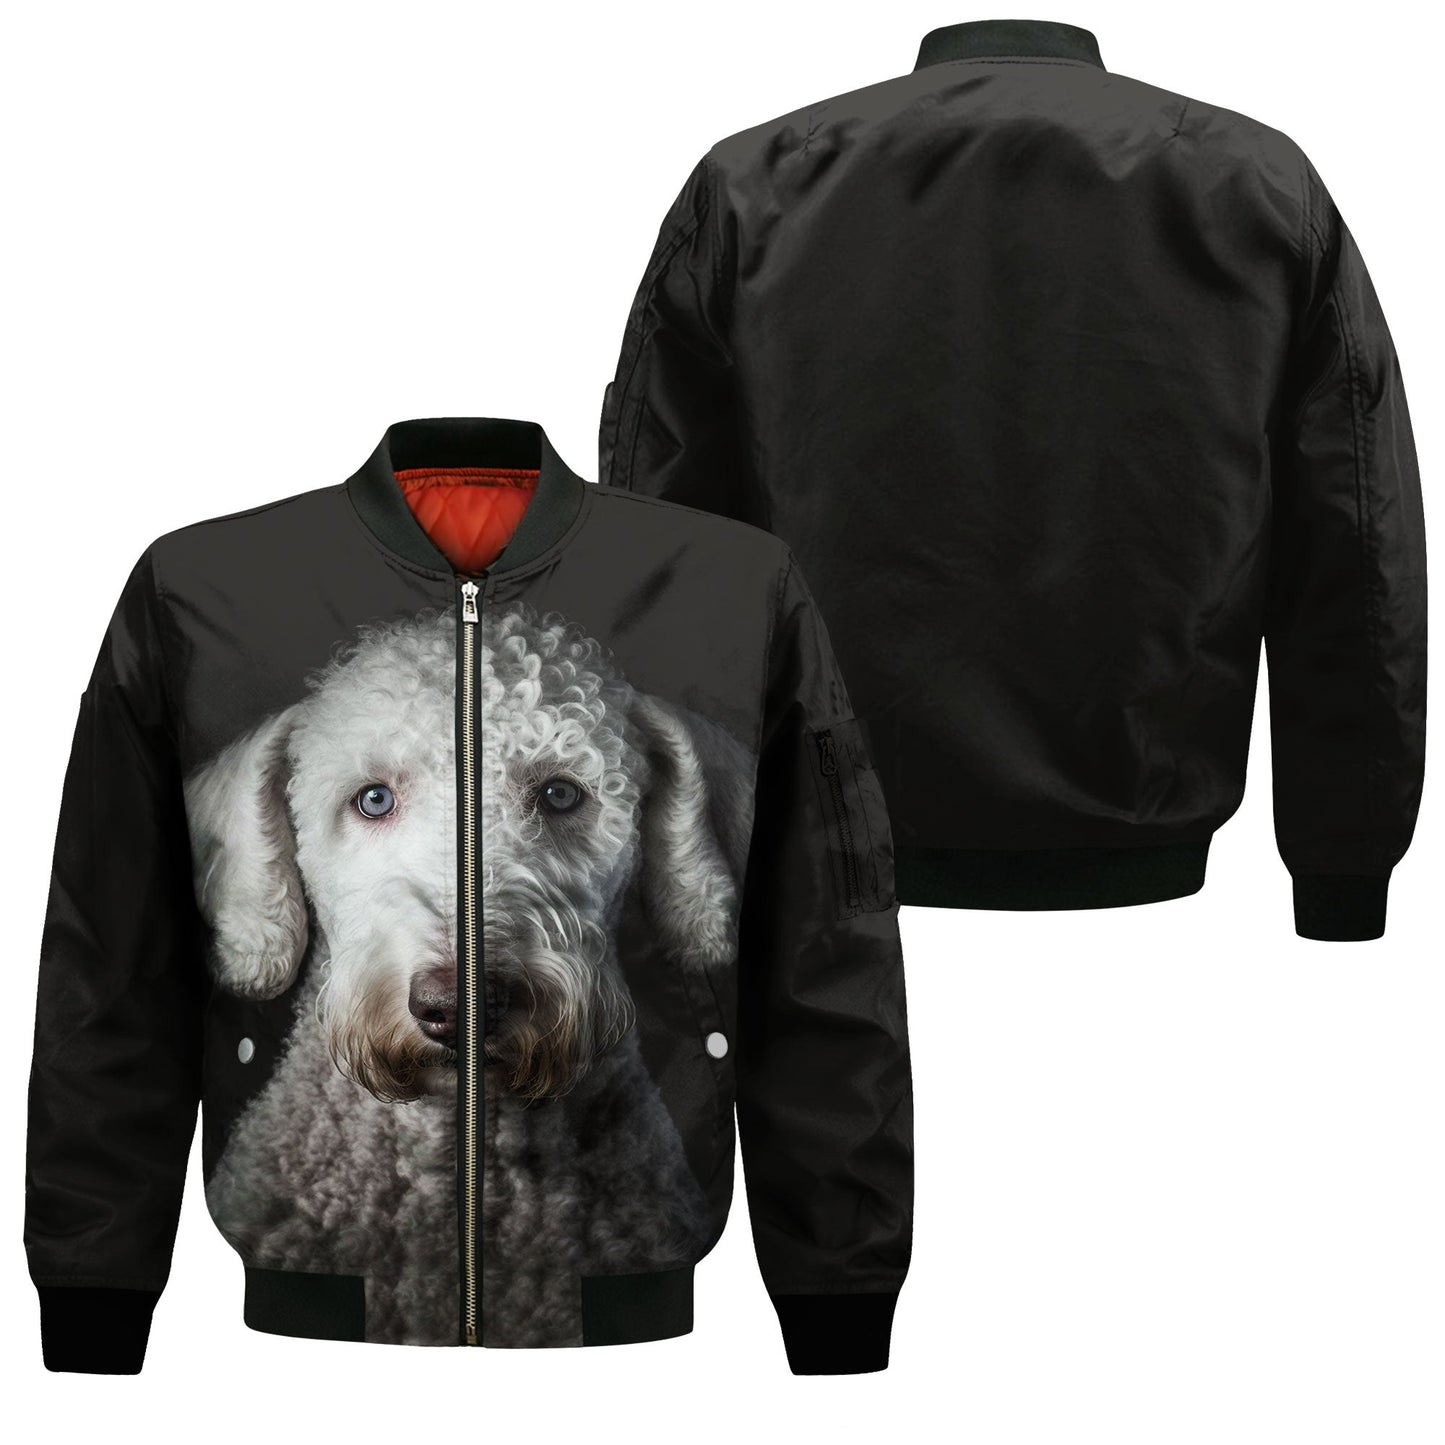 Bedlington Terrier AI - Unisex 3D Graphic Bomber Jacket